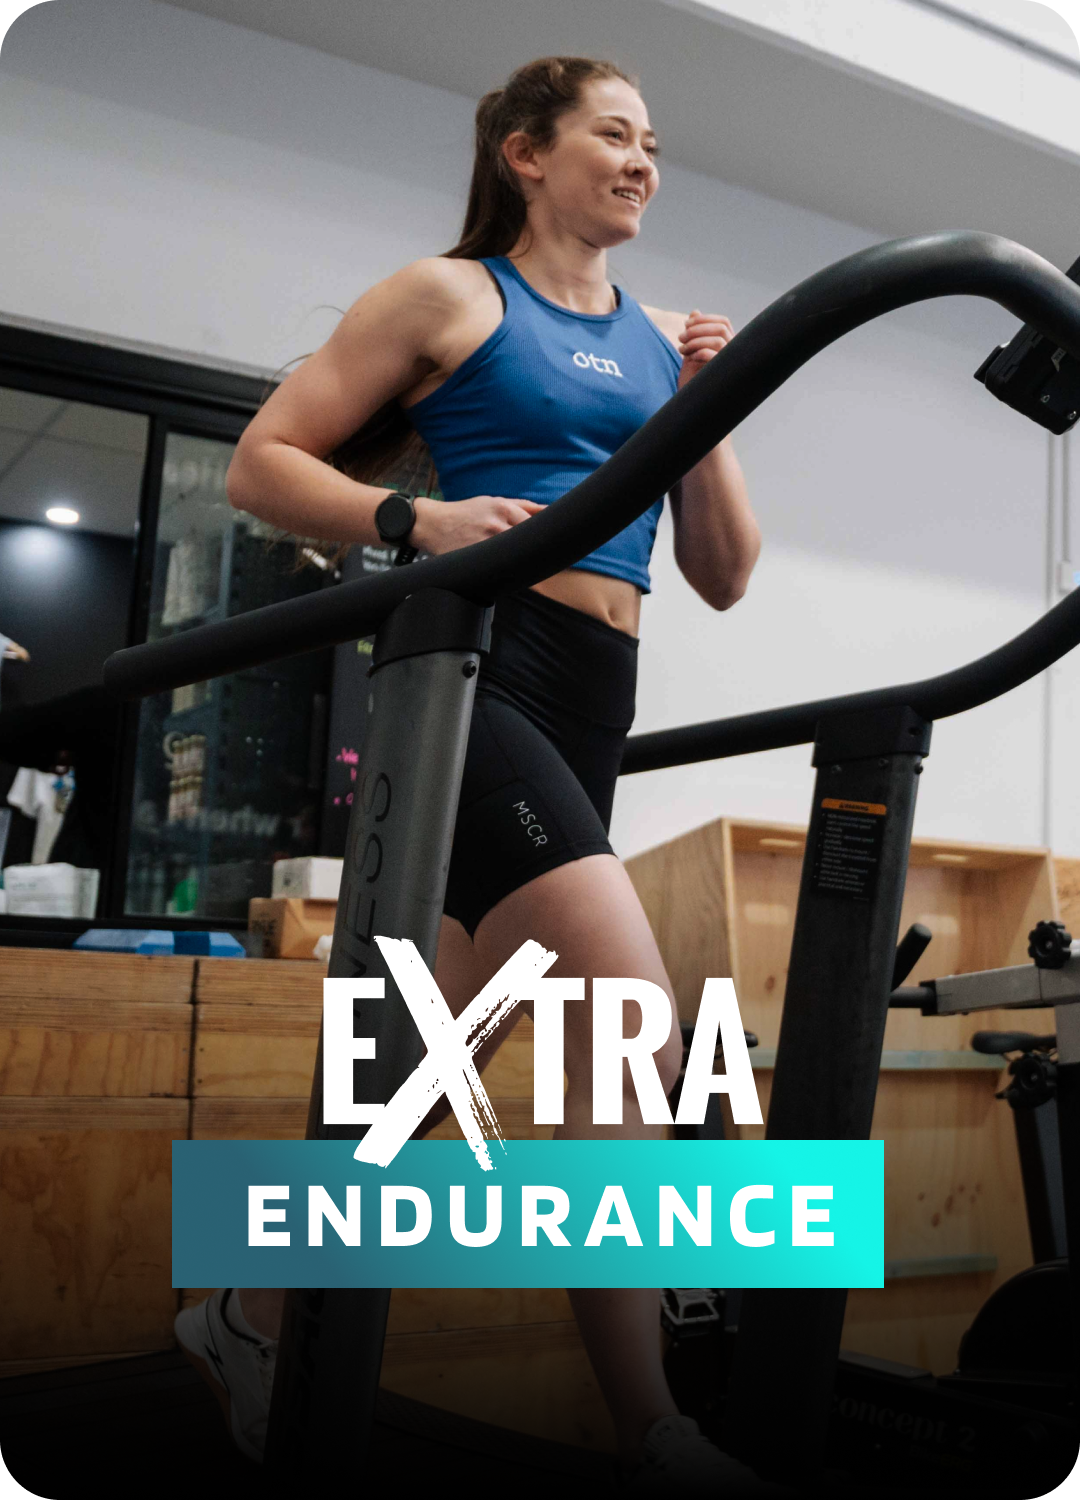 eXtra Endurance Program